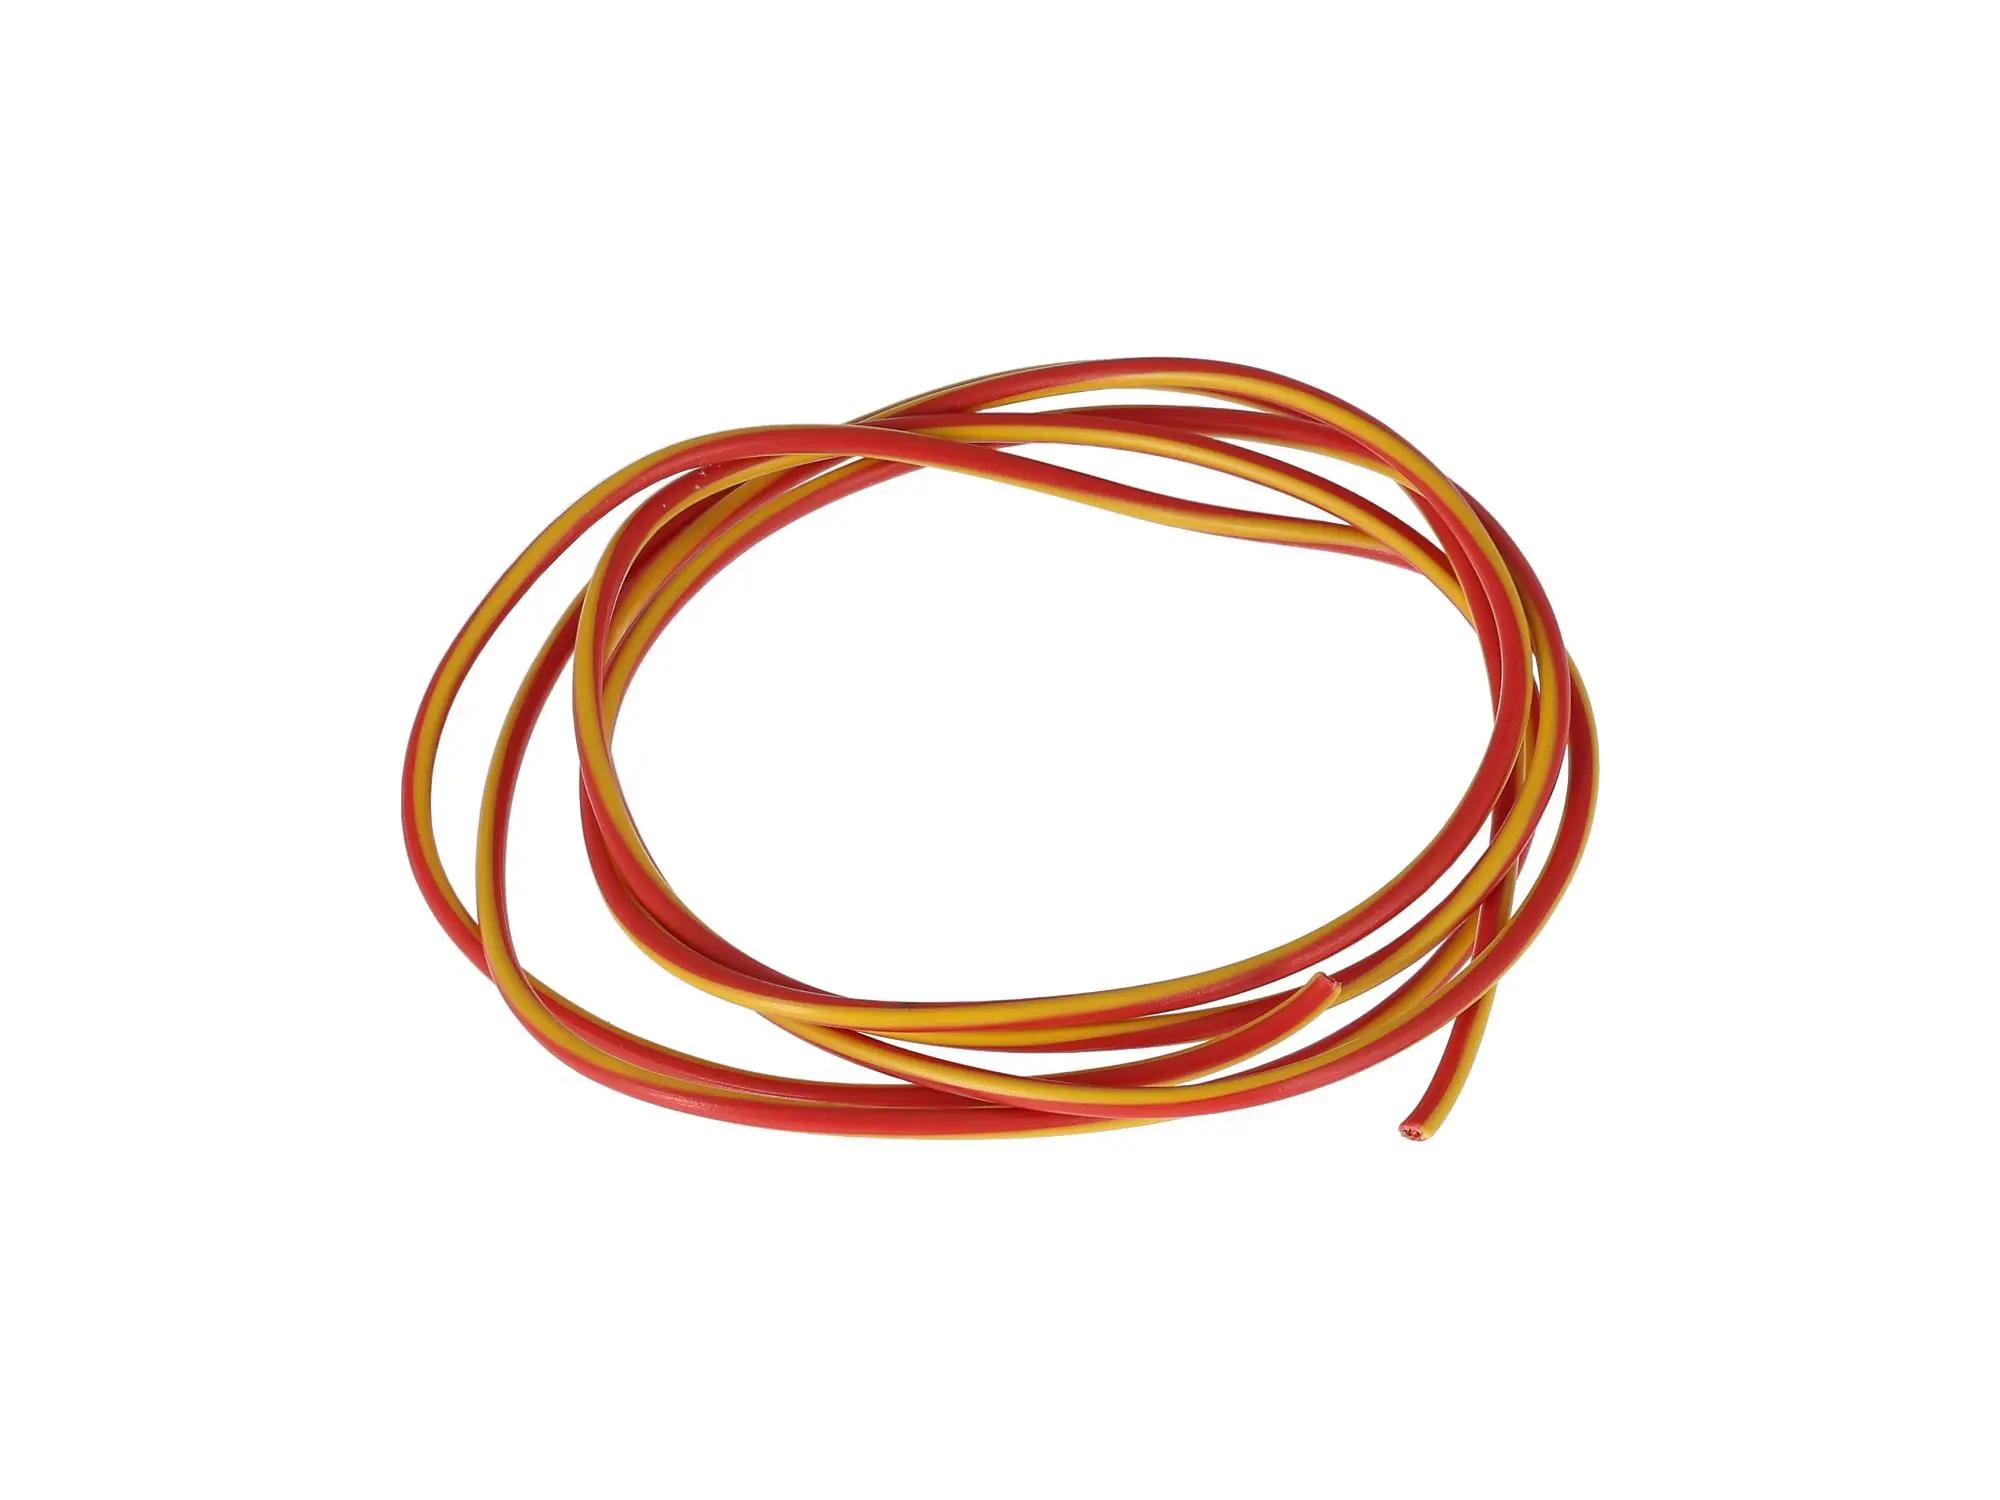 Kabel - Rot/Gelb 0,50mm² Fahrzeugleitung - 1m von AKF